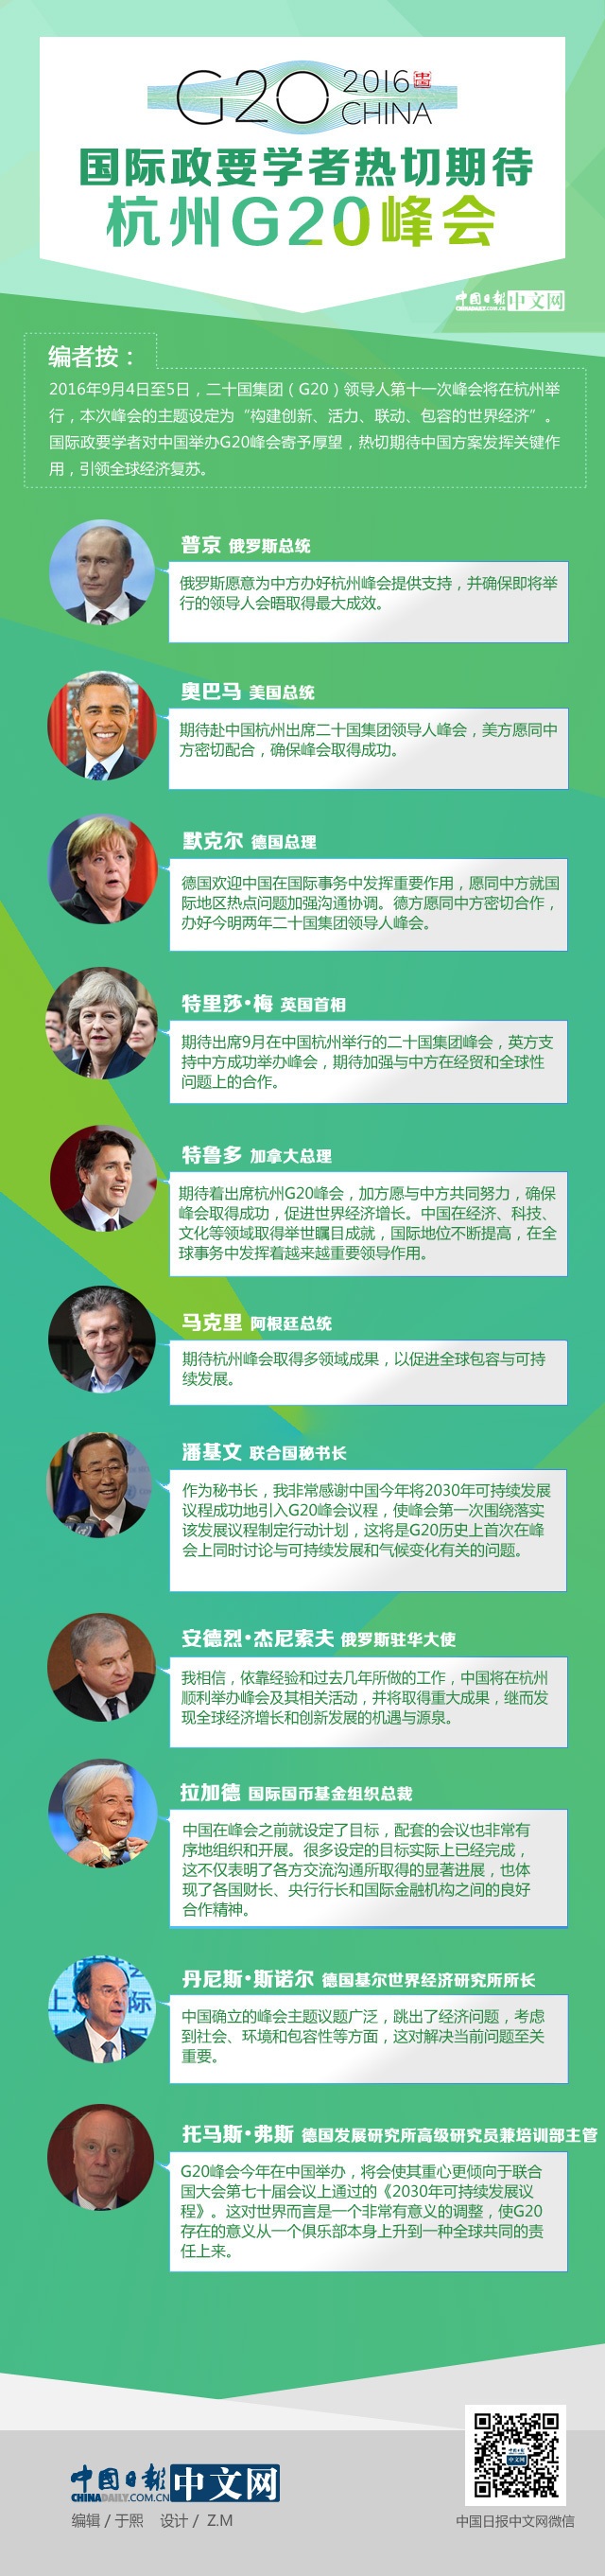 国际政要学者热切期待G20杭州峰会